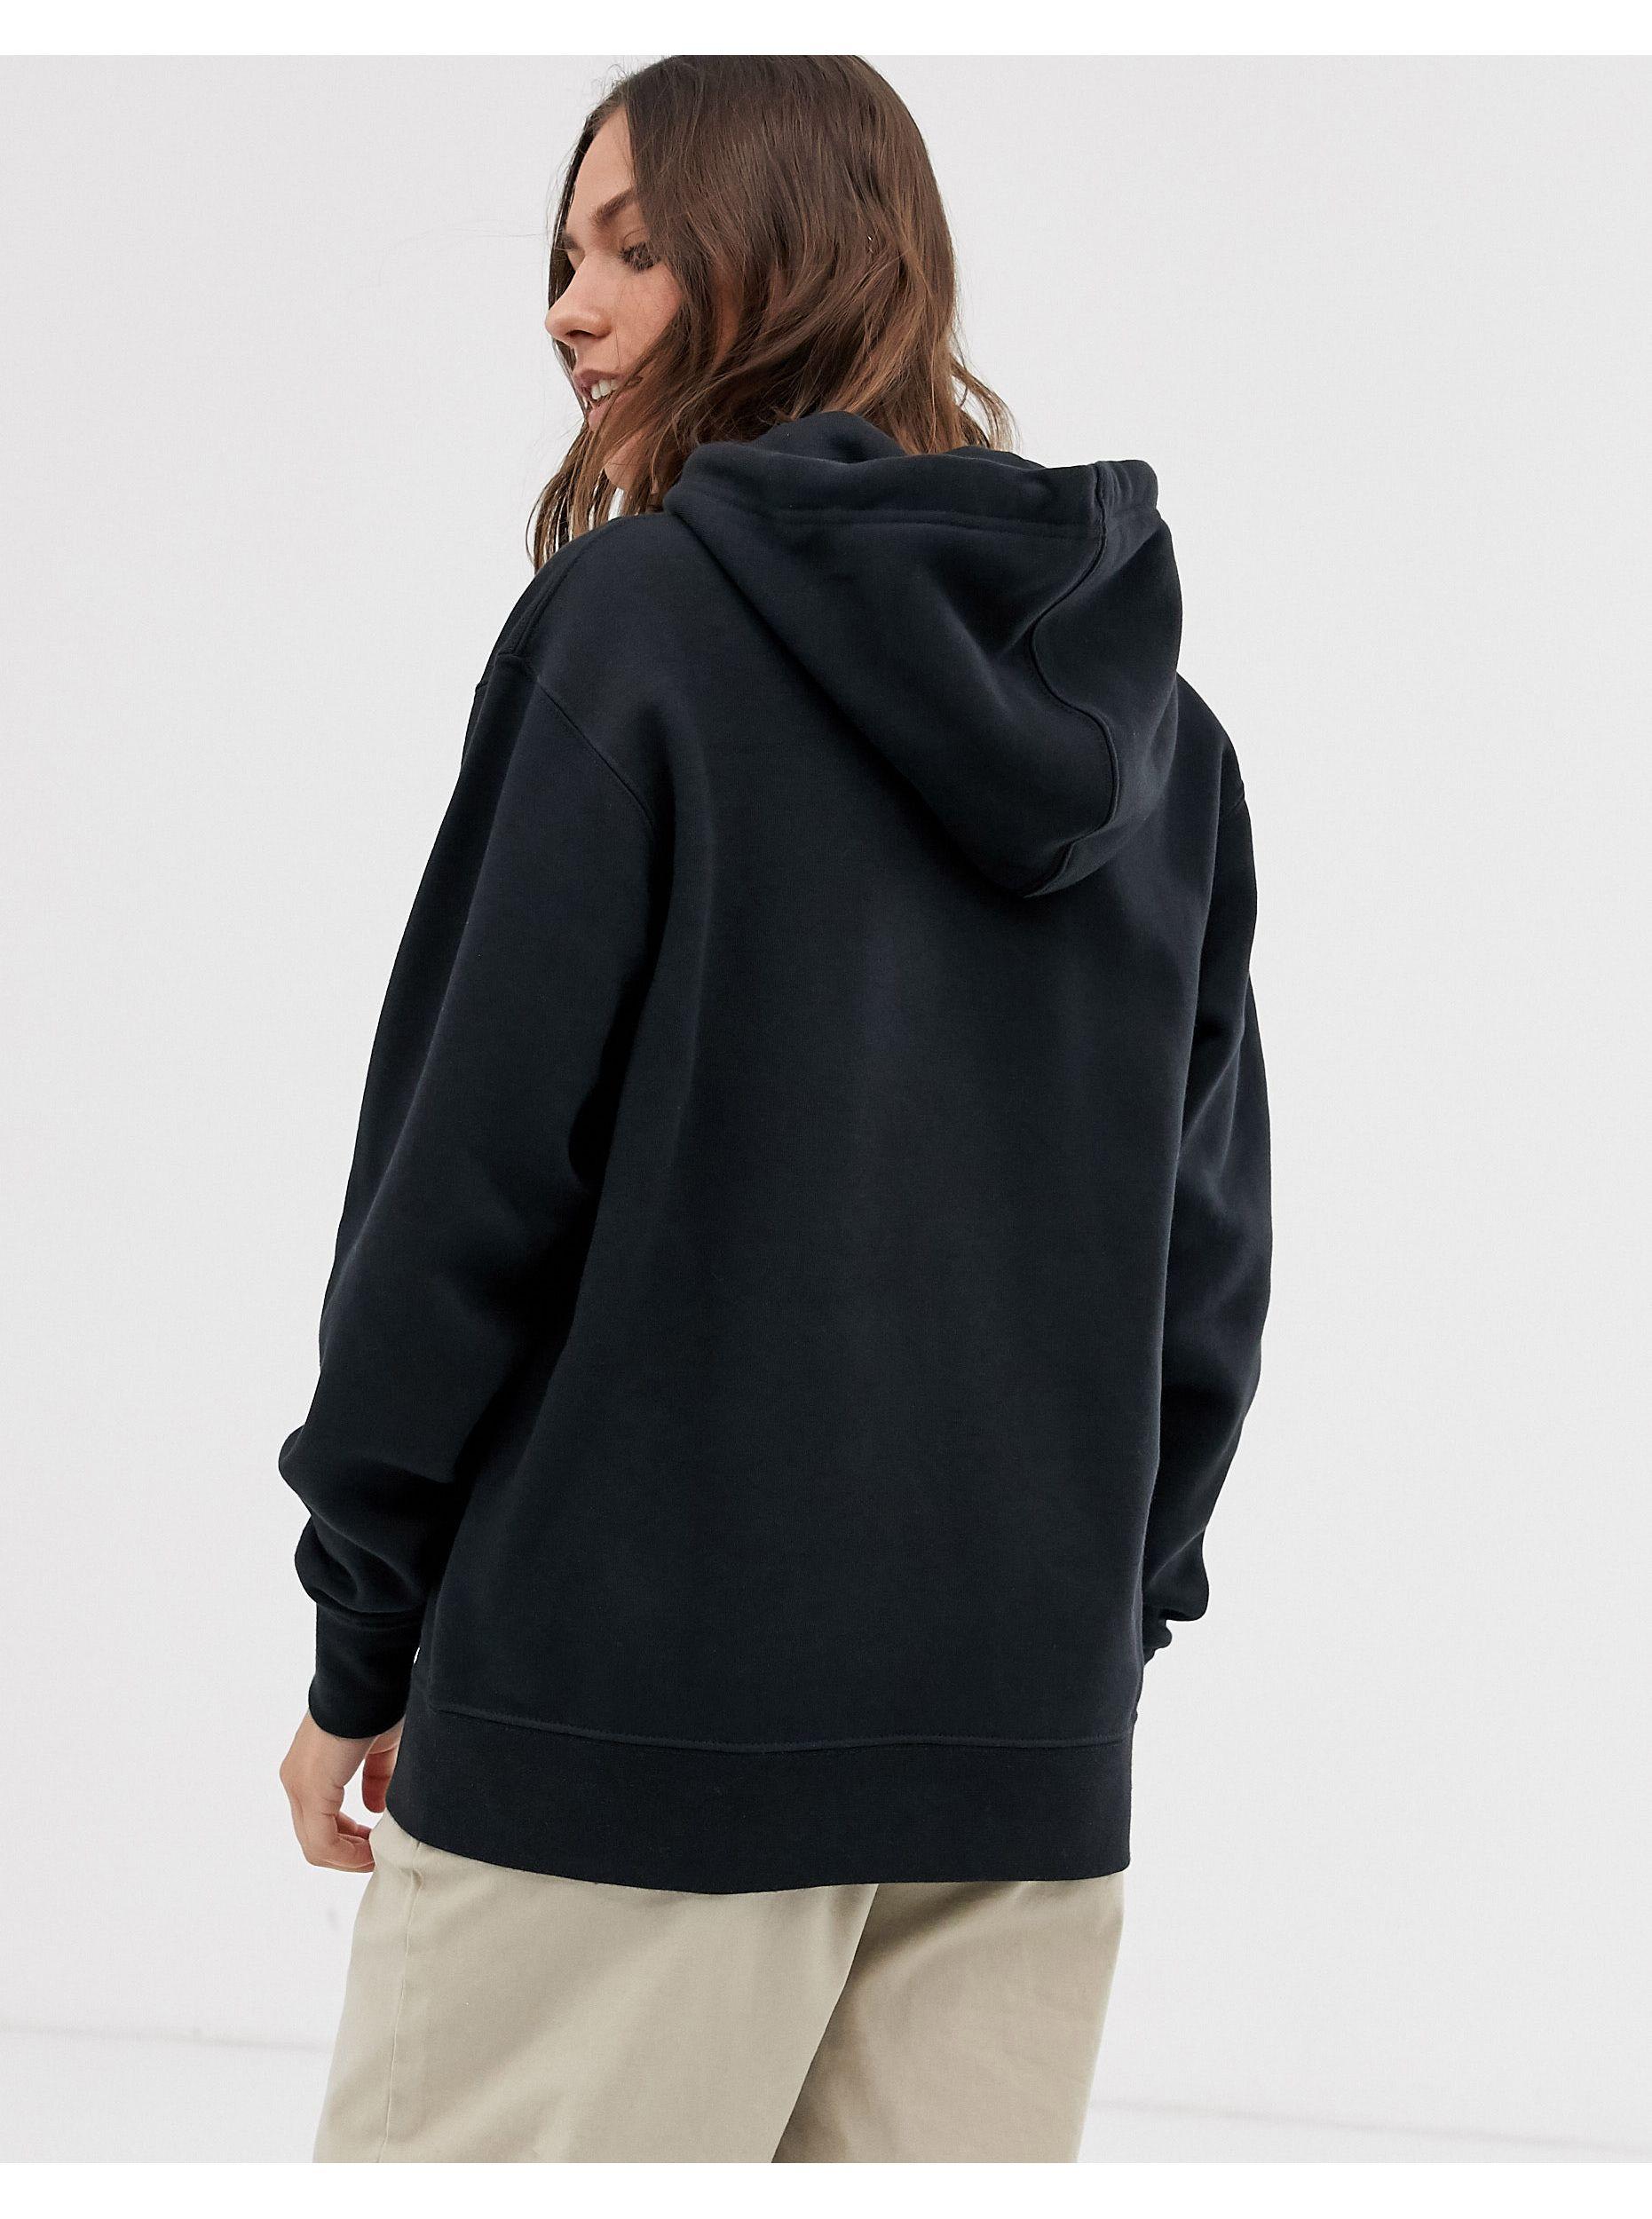 black nike oversized sweatshirt